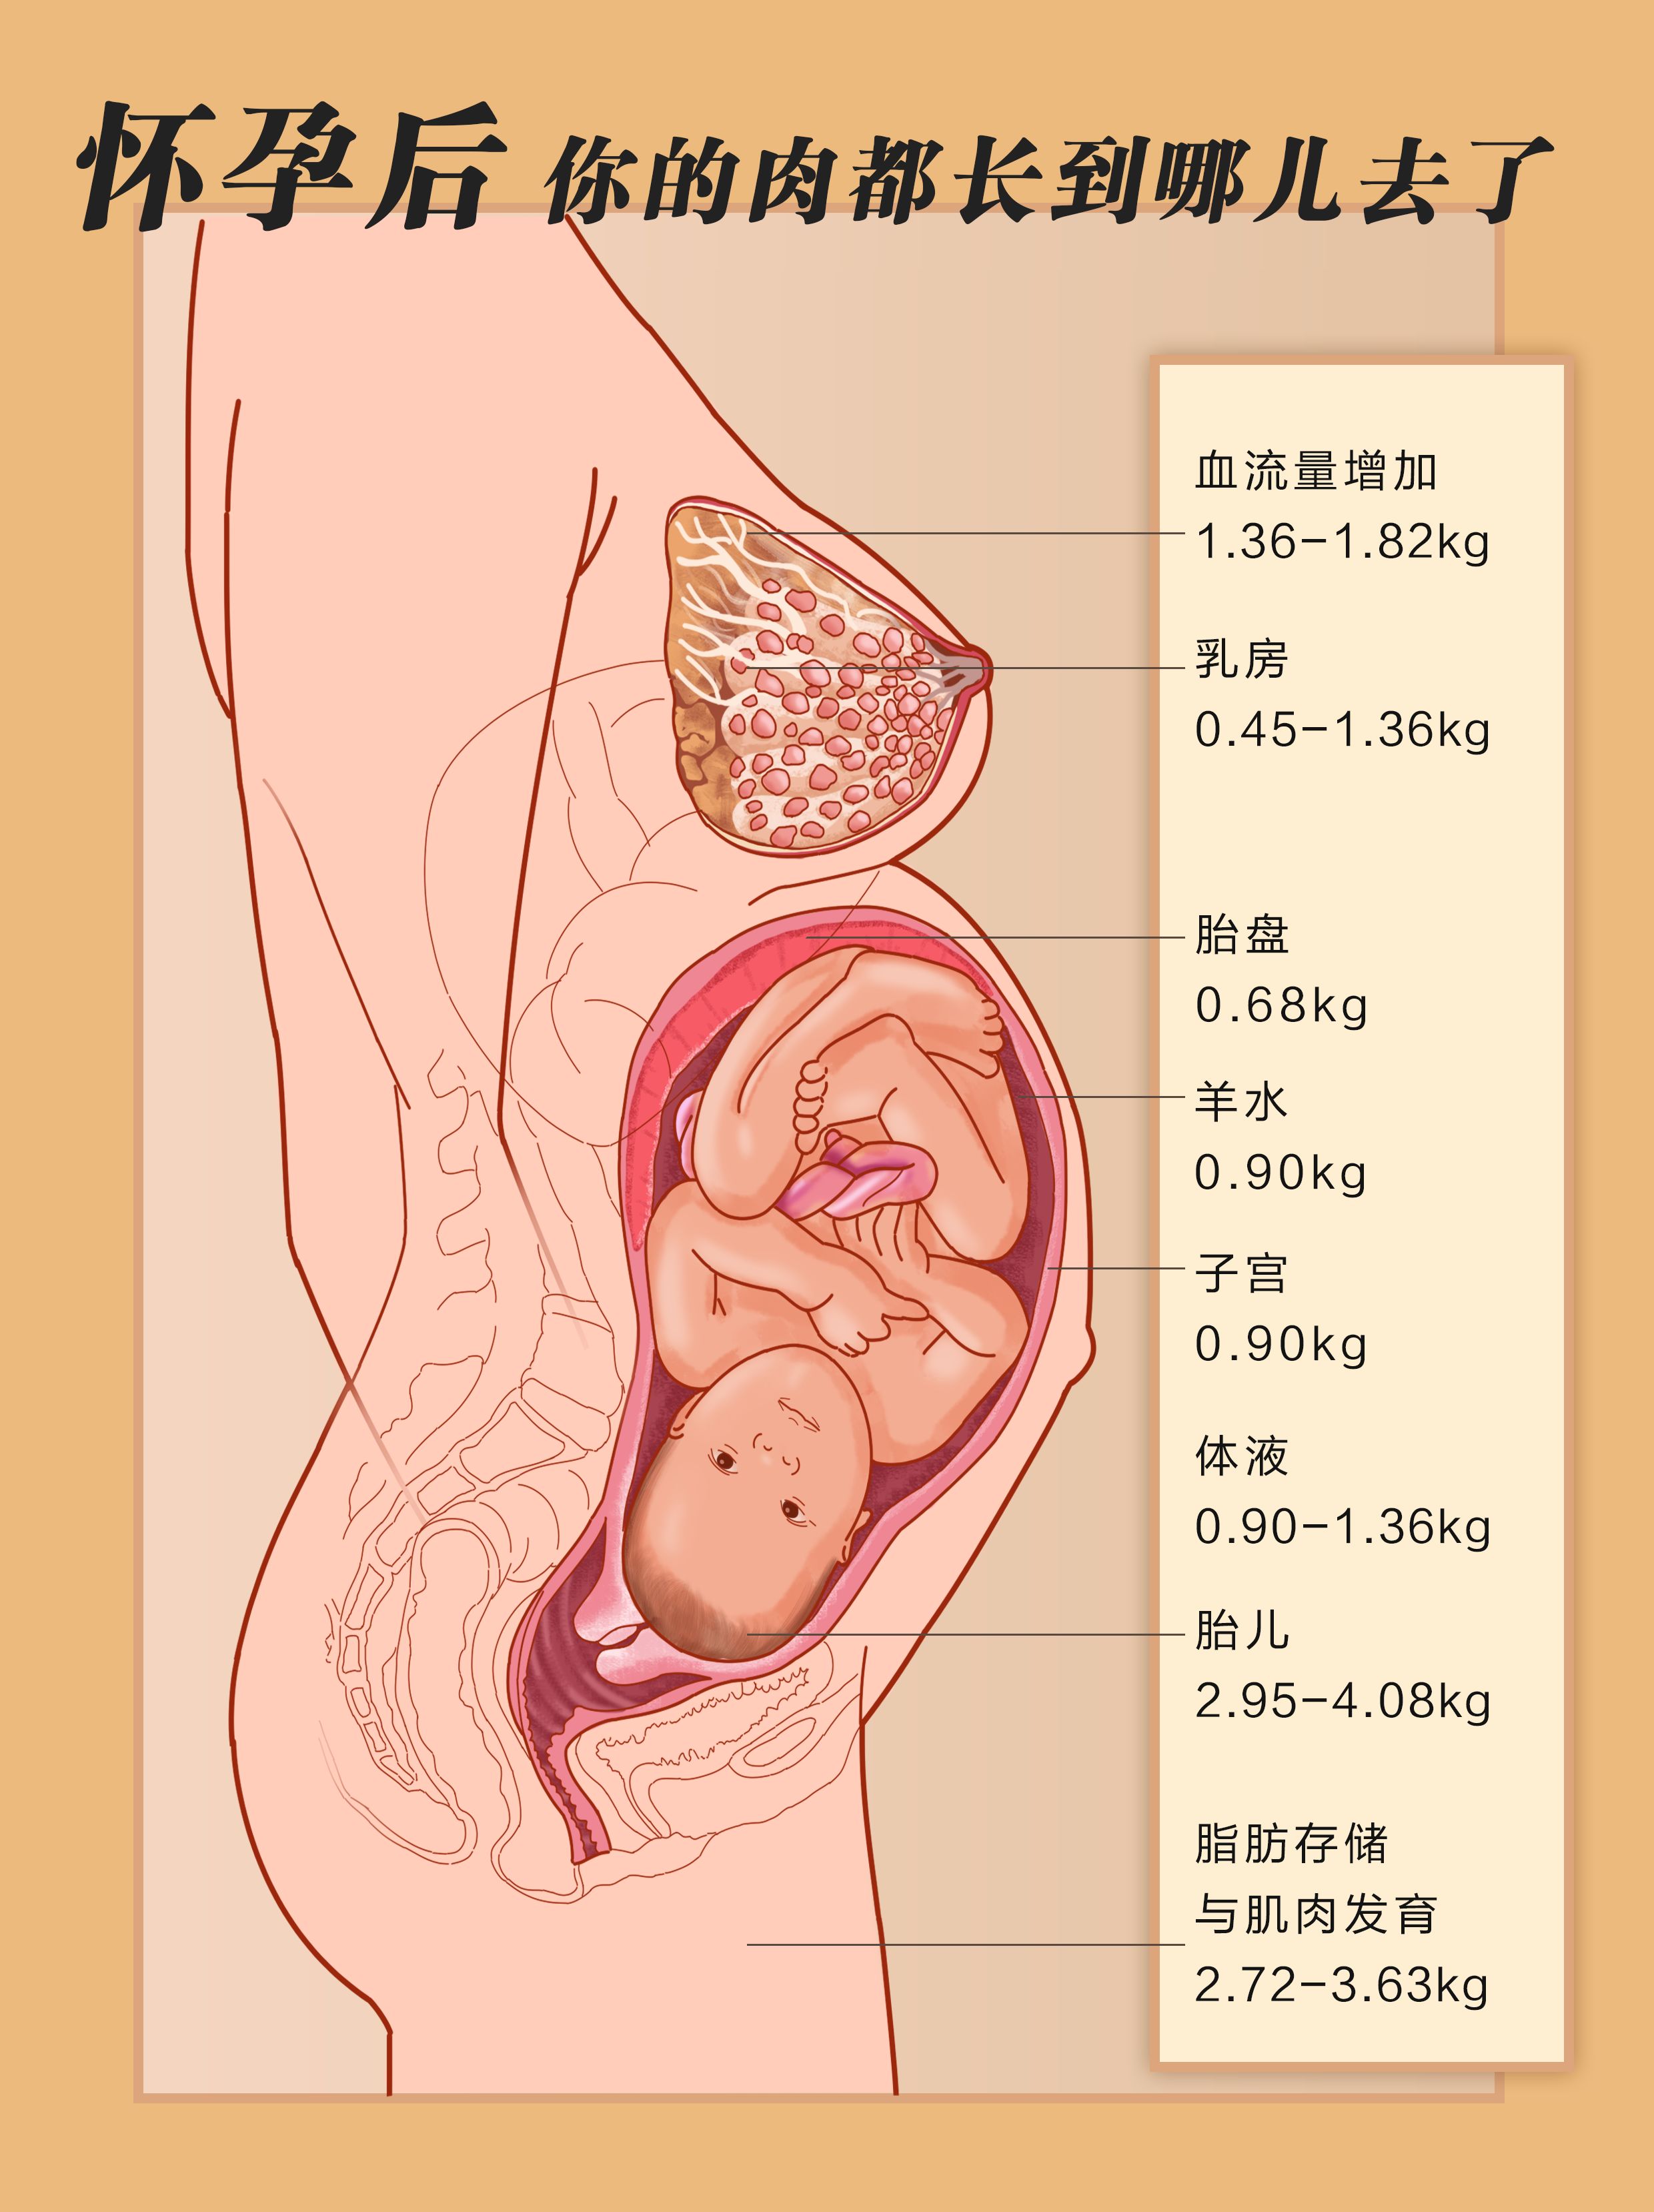 孕期女人平均增重20斤,宝宝平均才5斤,剩下的肉长在哪儿?